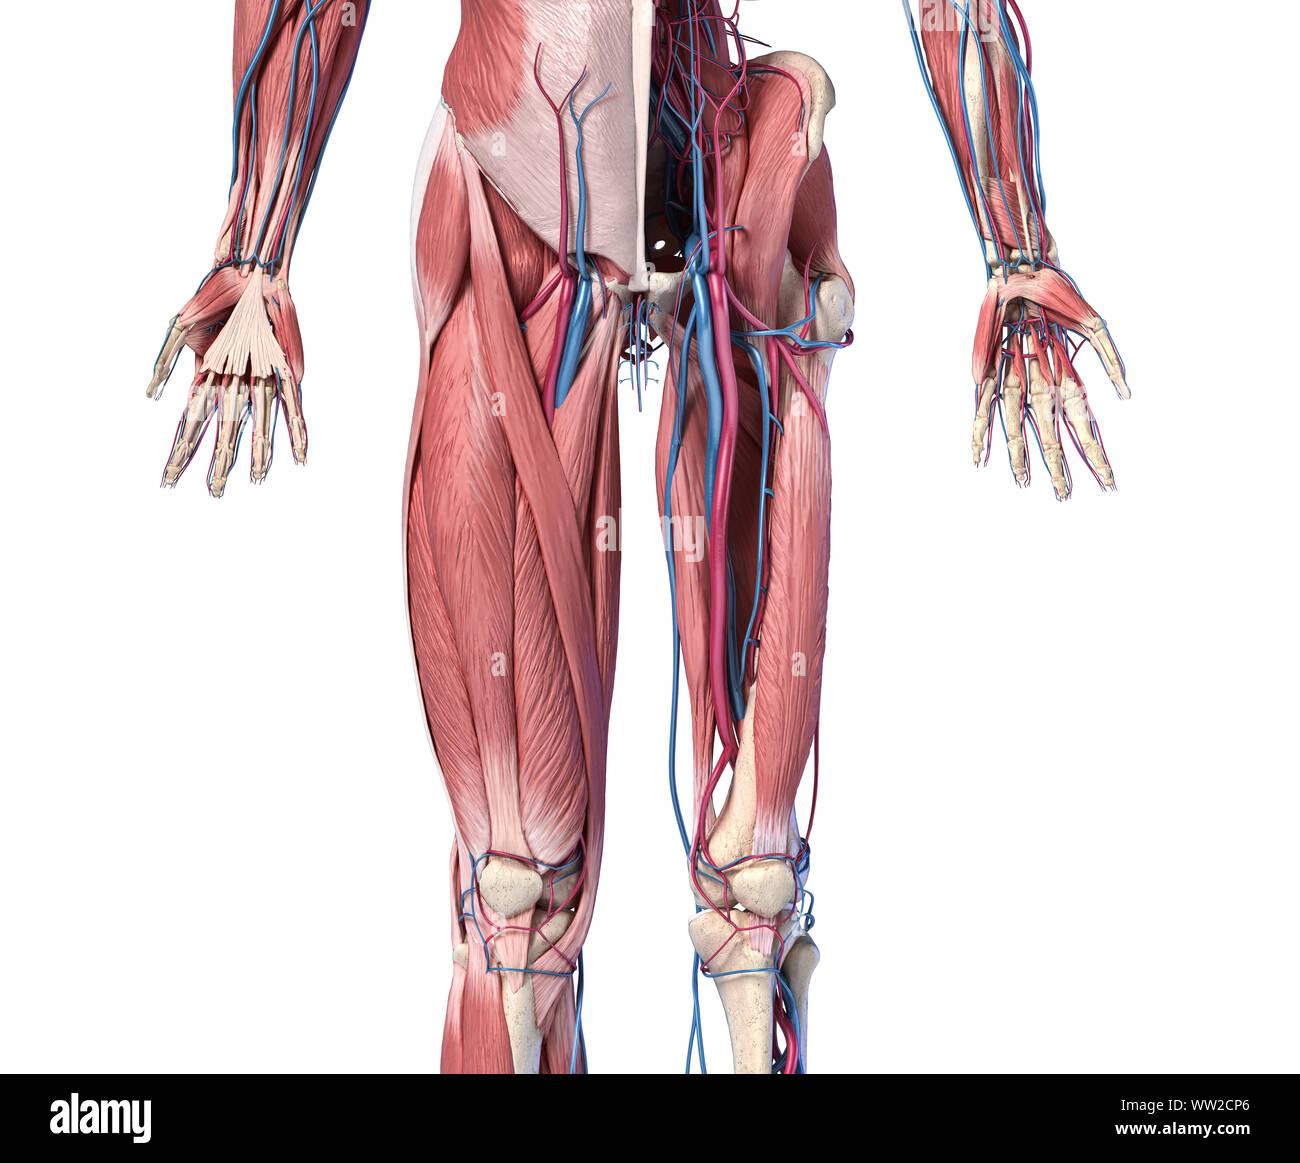 L'anatomie humaine, des membres et de la hanche squelettique, musculaire et cardiovasculaire, avec des sous-couches de muscles. Vue de face, sur fond blanc. 3d illustration Banque D'Images